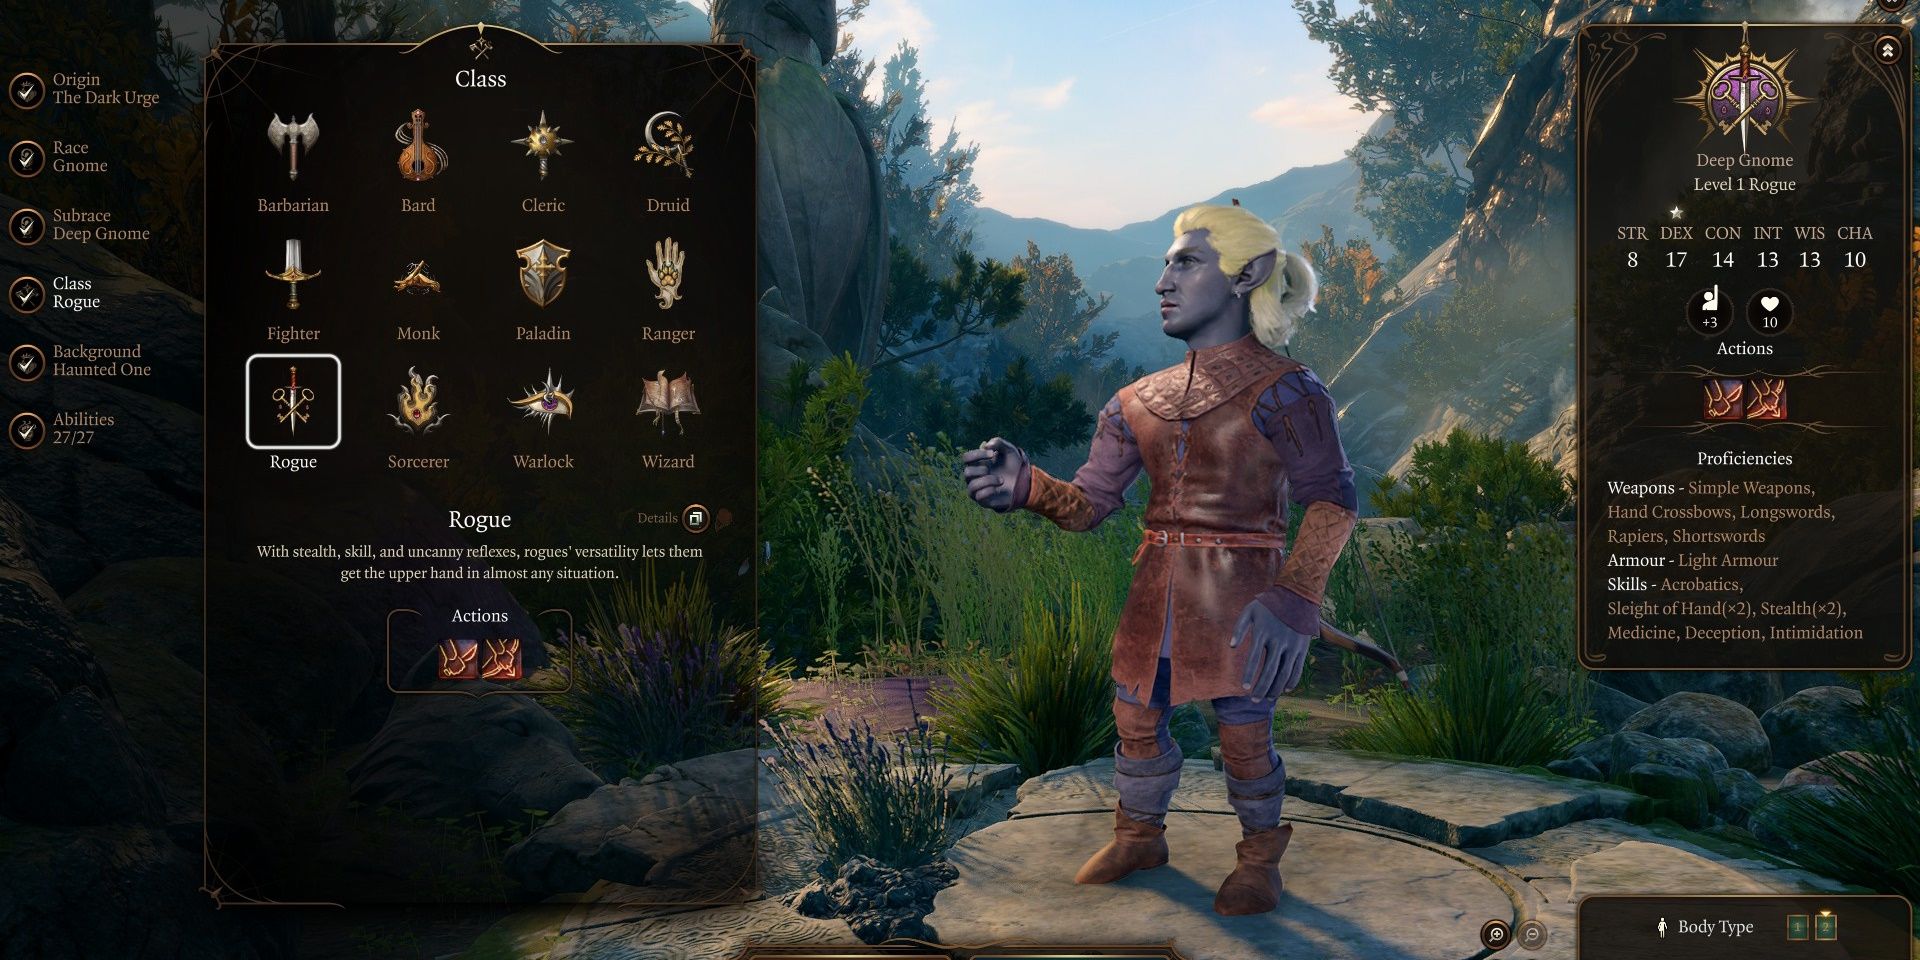 Bildschirm zur Charaktererstellung, der einen tiefen Gnom-Schurken in Baldur's Gate 3 zeigt